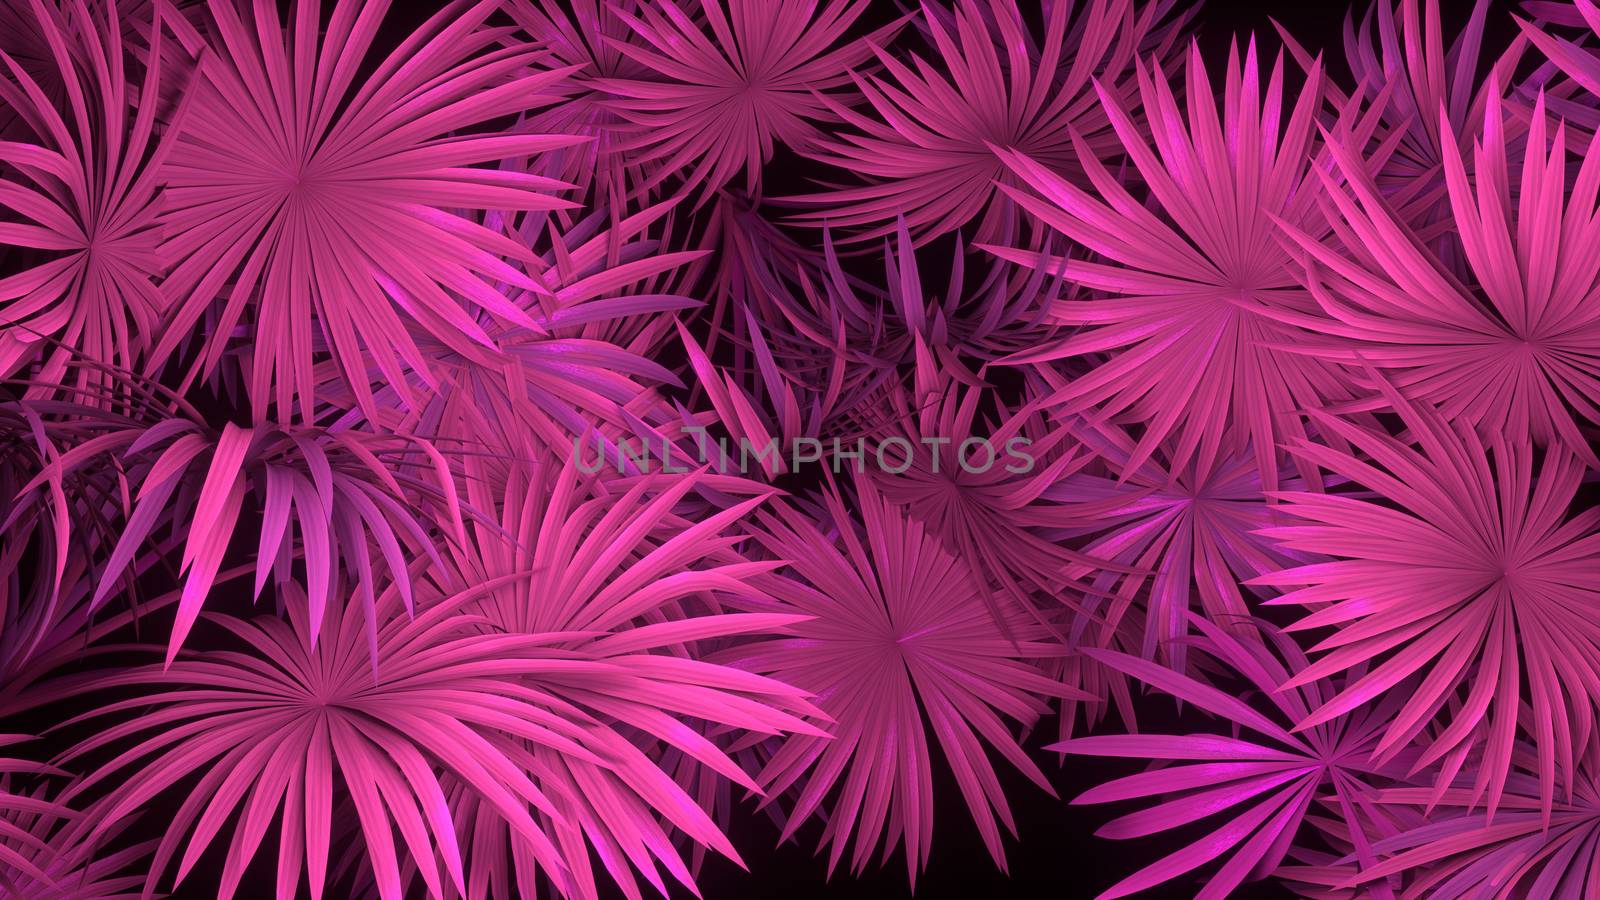 3d render of neon palm leaves on black background. Banner design. Retrowave, synthwave, vaporwave illustration. by Shanvood